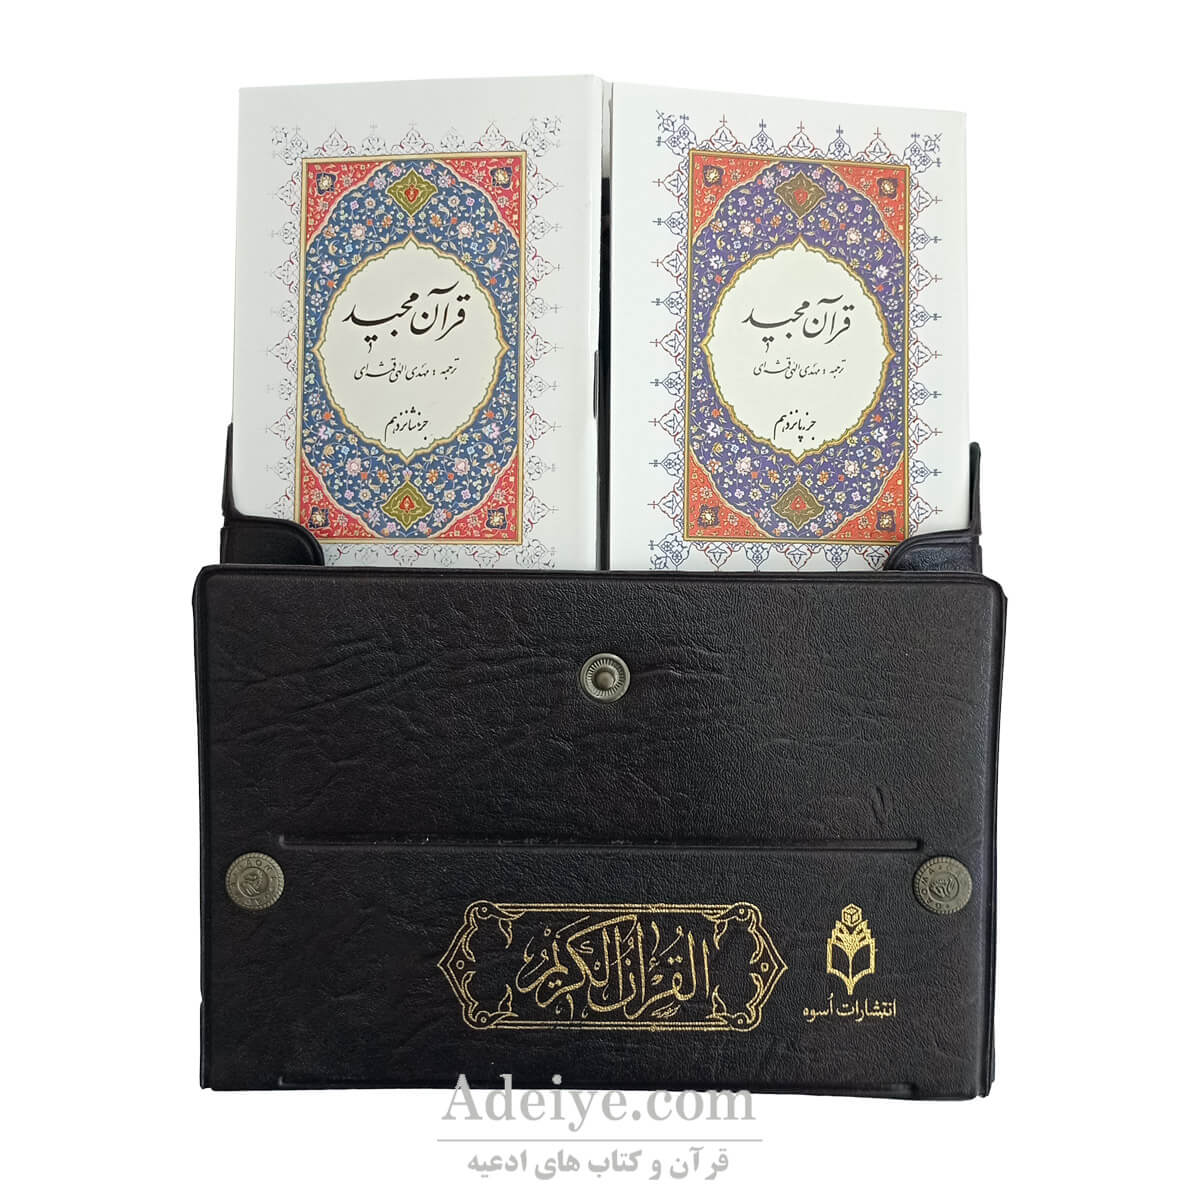 قرآن سی پاره کیفی اسوه در یک کیف هر جزء در یک جلد